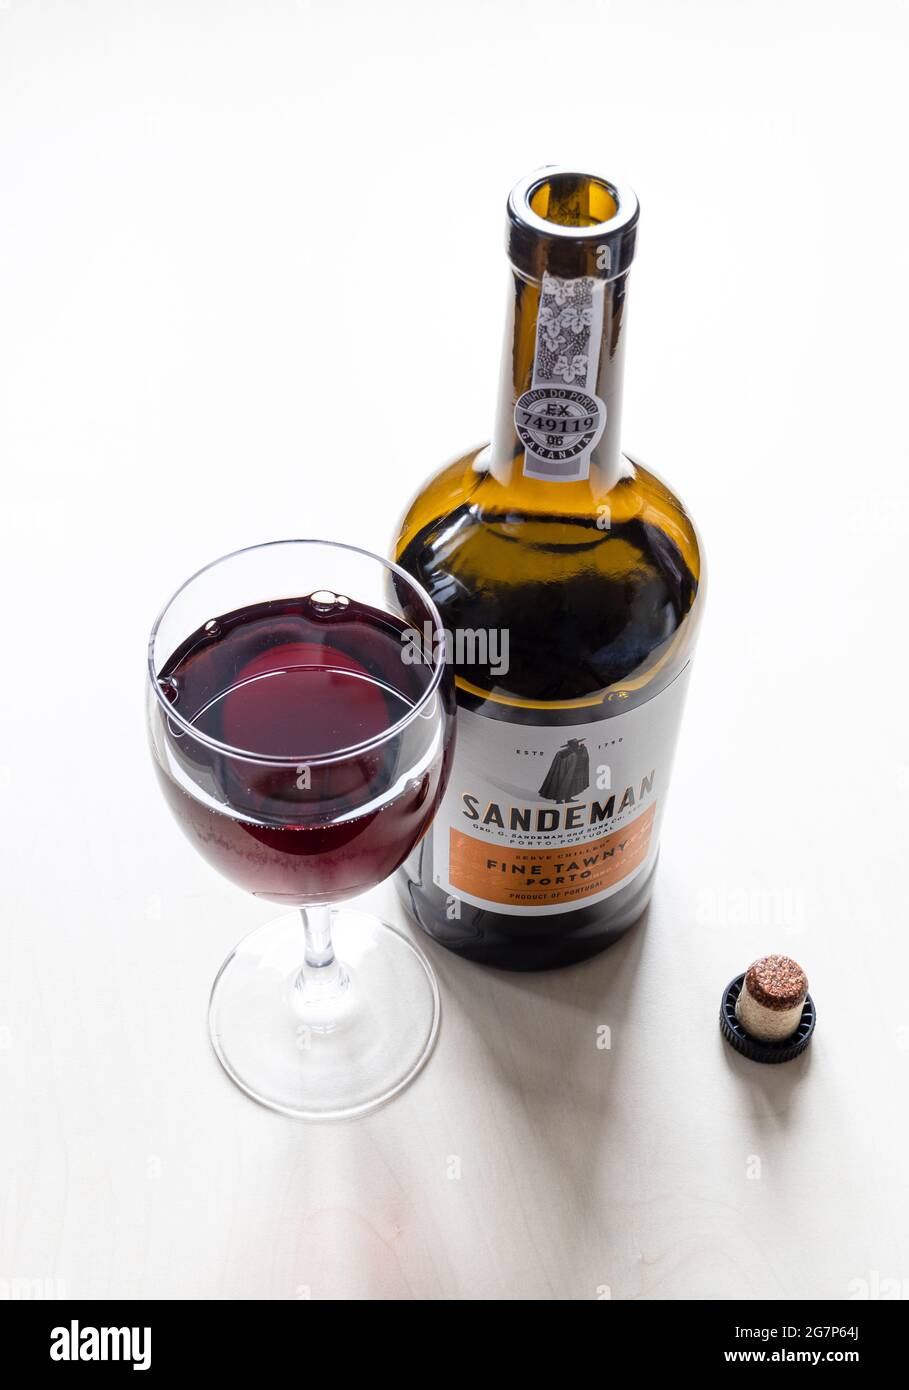 MOSCA, RUSSIA - 10 GIUGNO 2021: wineglass e bottiglia aperta di Sandeman  fine tawny porto vino. Sandeman è una marca di vini Porto e Sherry fondata  nel 179 Foto stock - Alamy